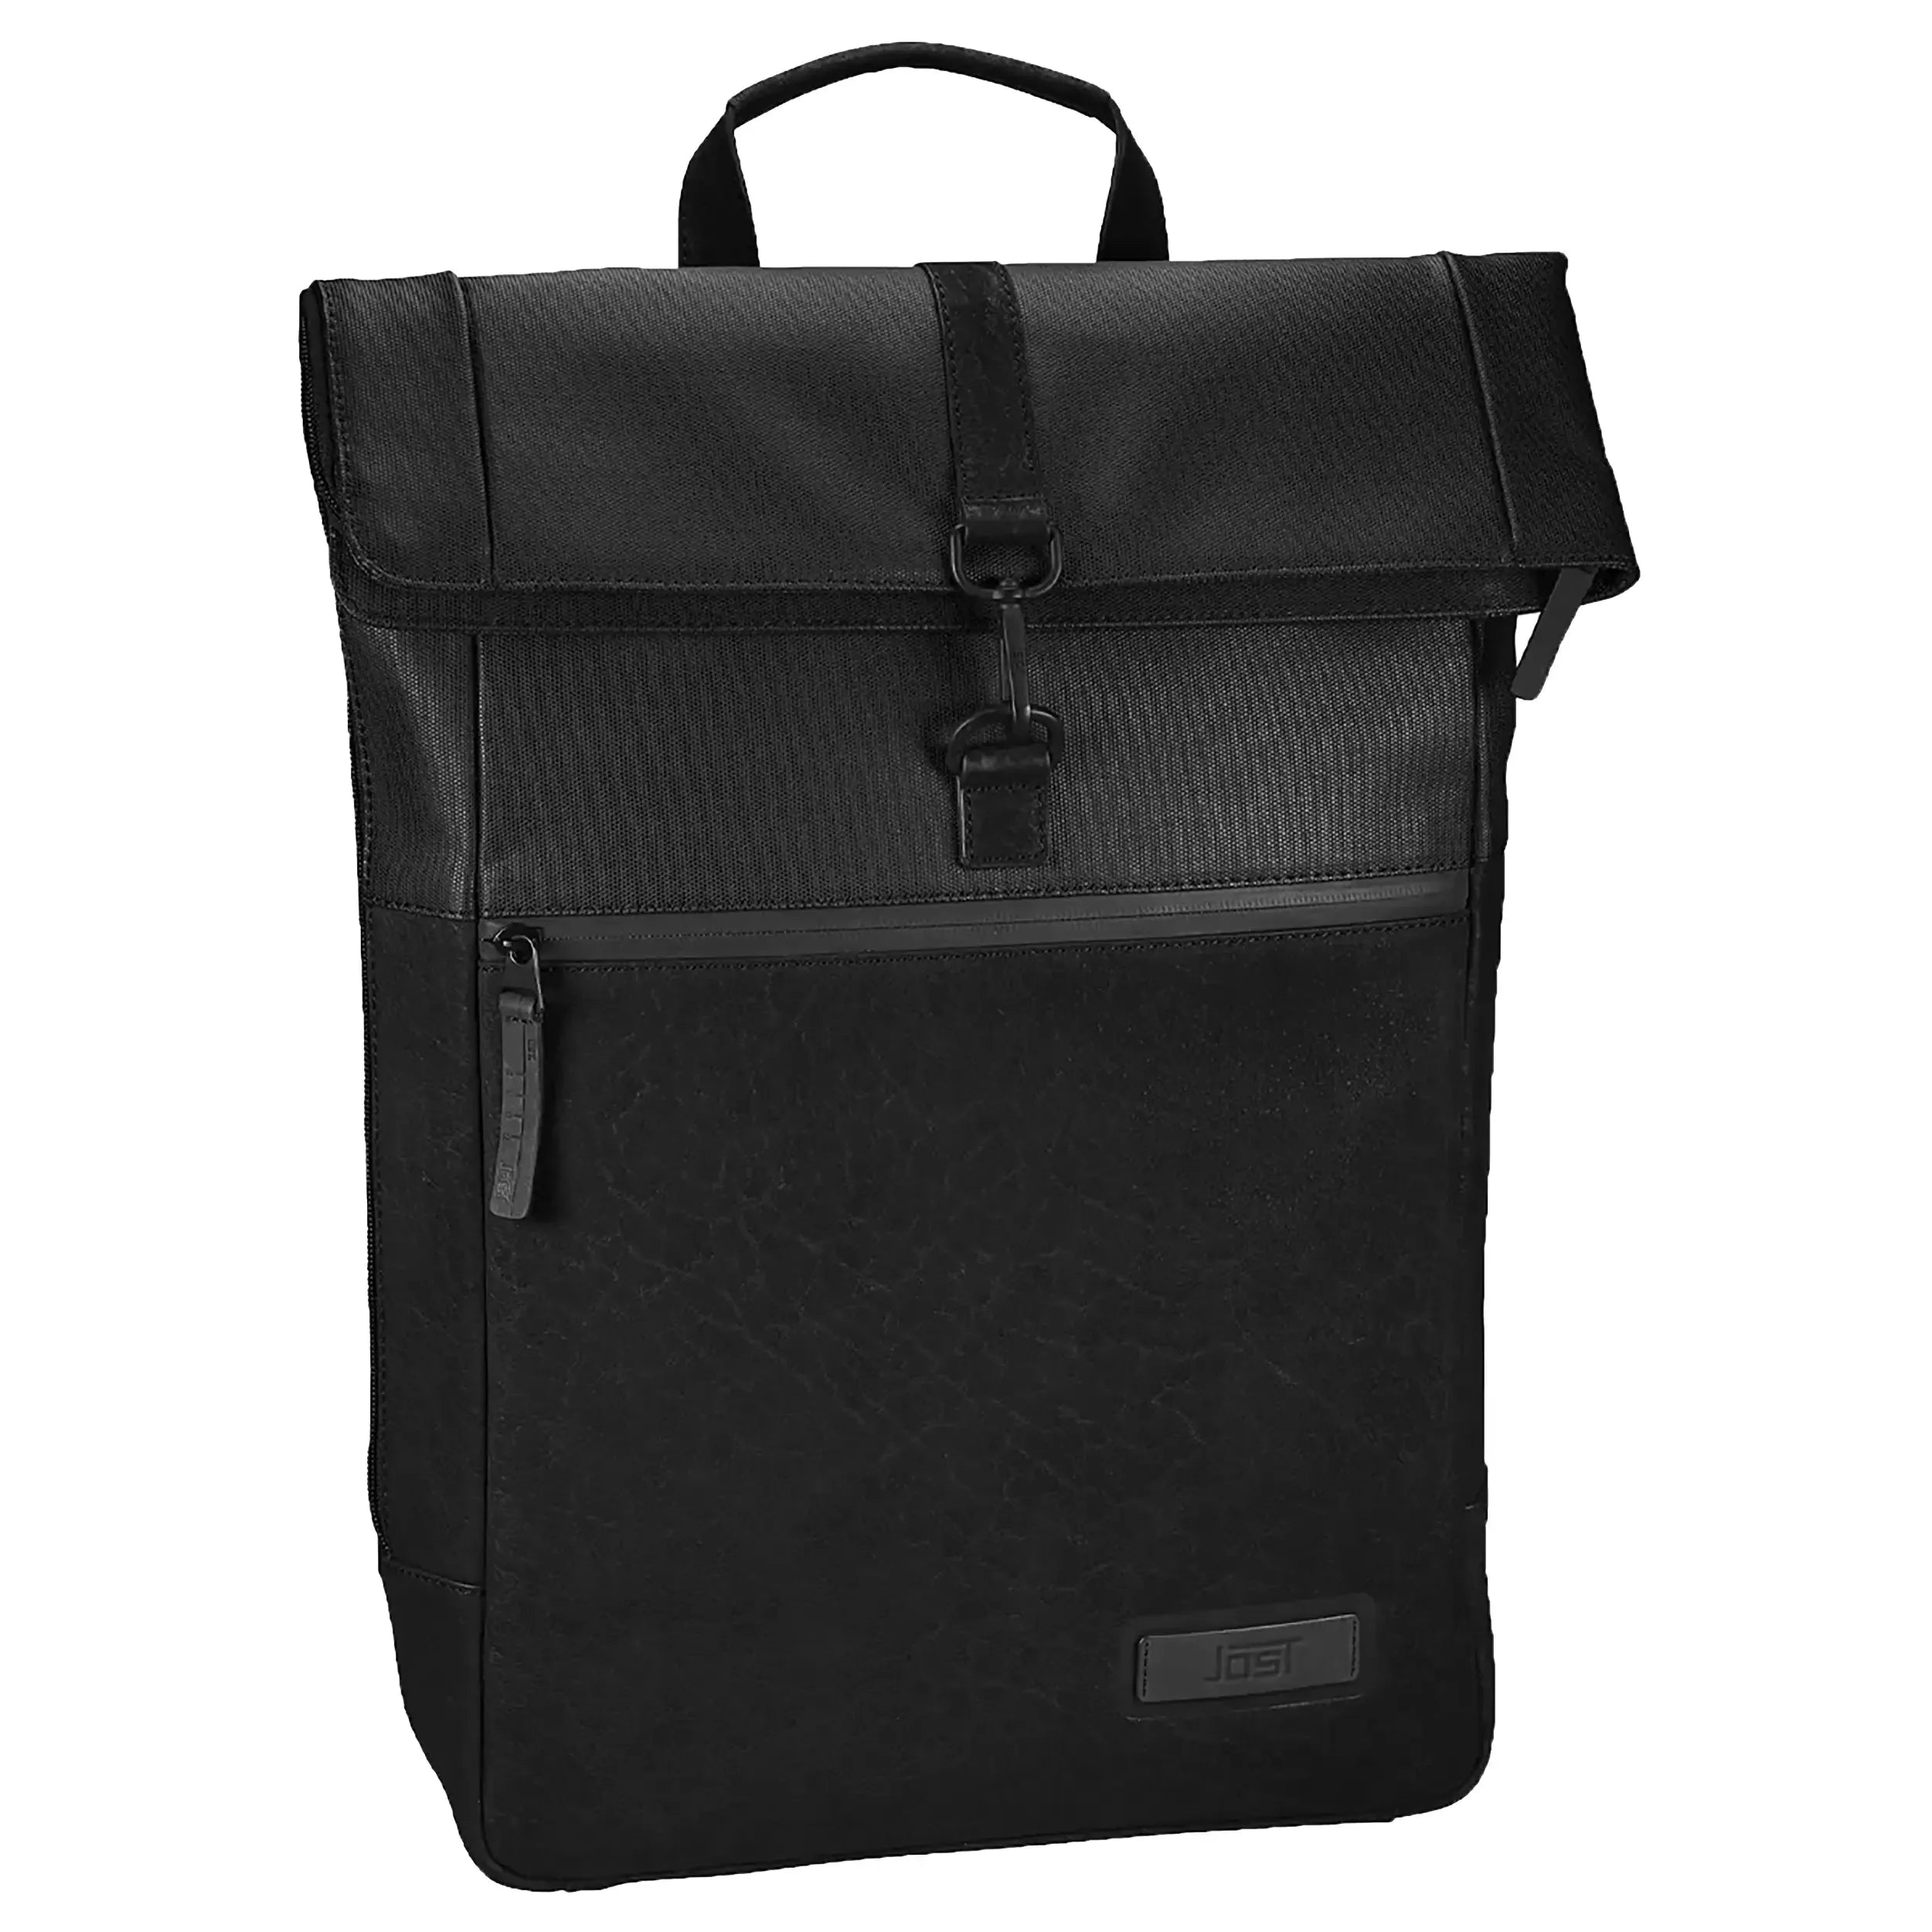 Jost Voxholm courier backpack 40 cm - black